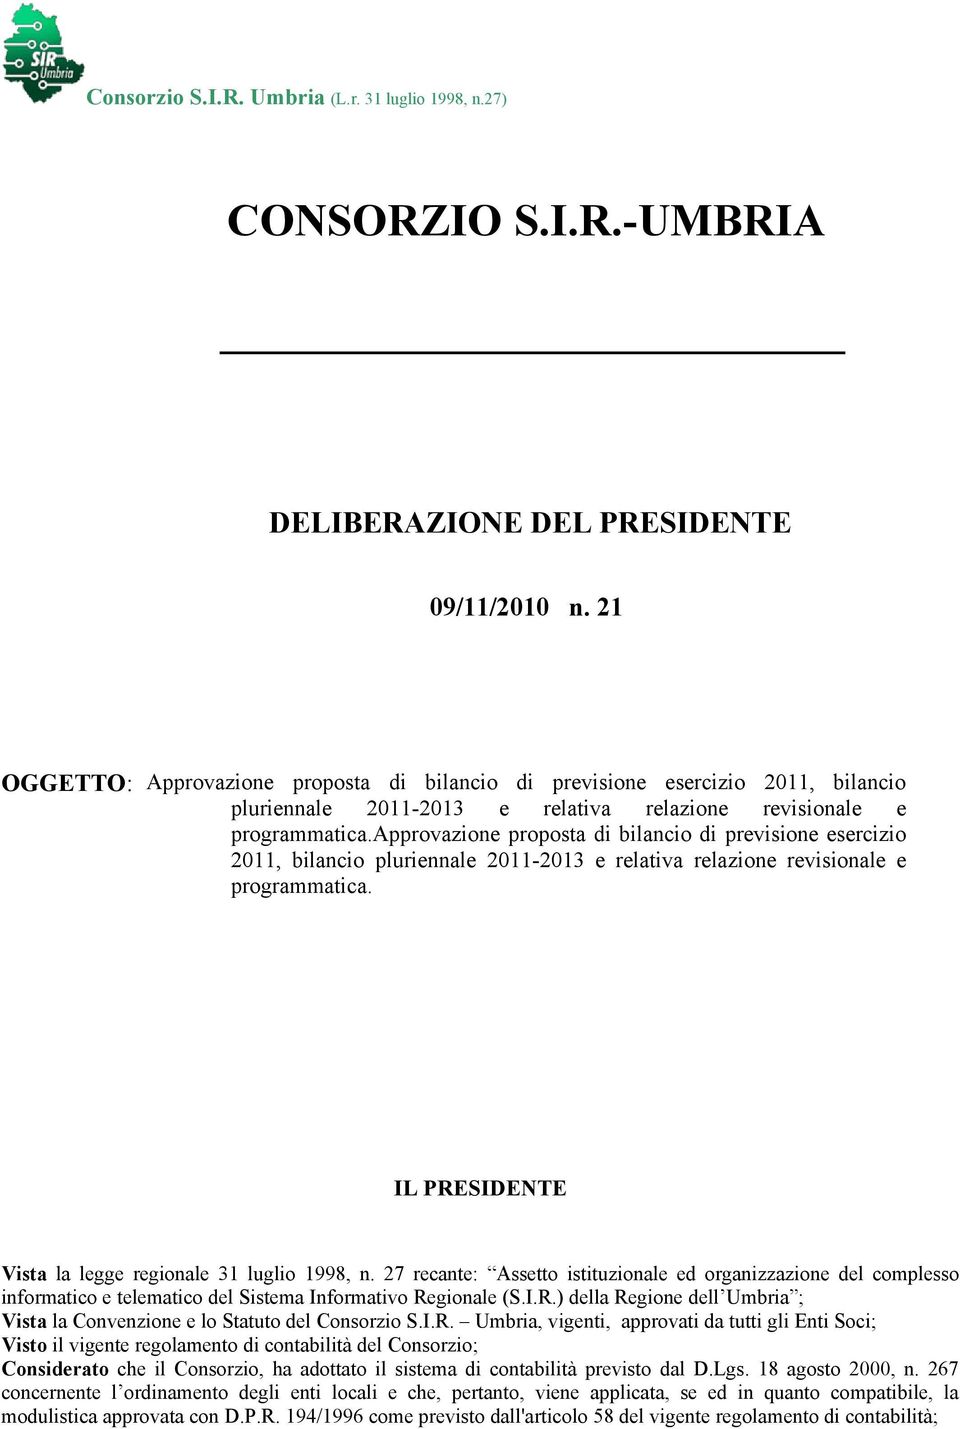 approvazione proposta di bilancio di previsione esercizio 2011, bilancio pluriennale 2011-2013 e relativa relazione revisionale e programmatica.